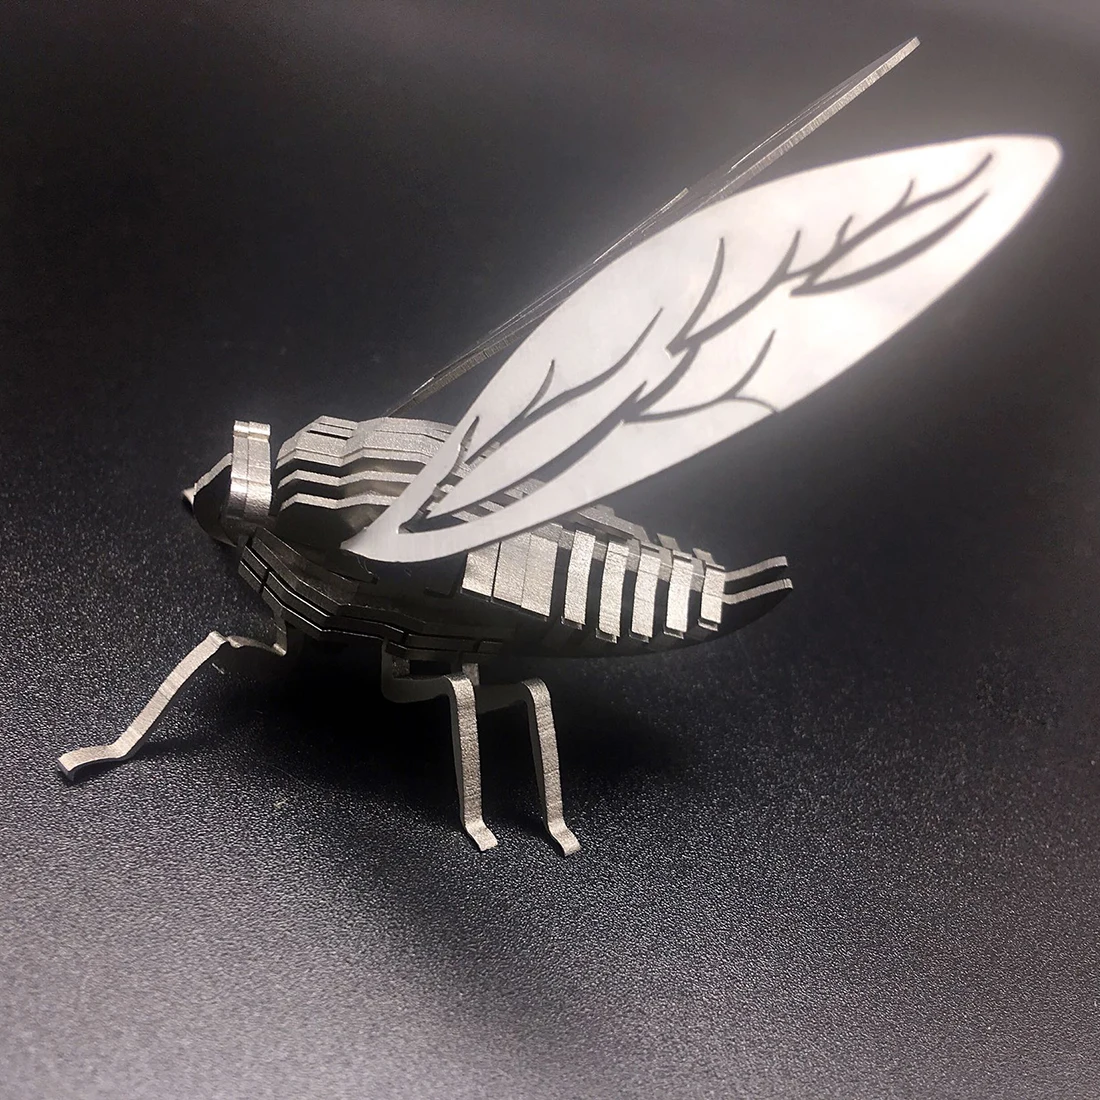 Surwish DIY собранная модель комплект 3D из нержавеющей стали в сборе съемный Cicada модель держатель для стакана Orna мужчины ts дети мужчины подарок